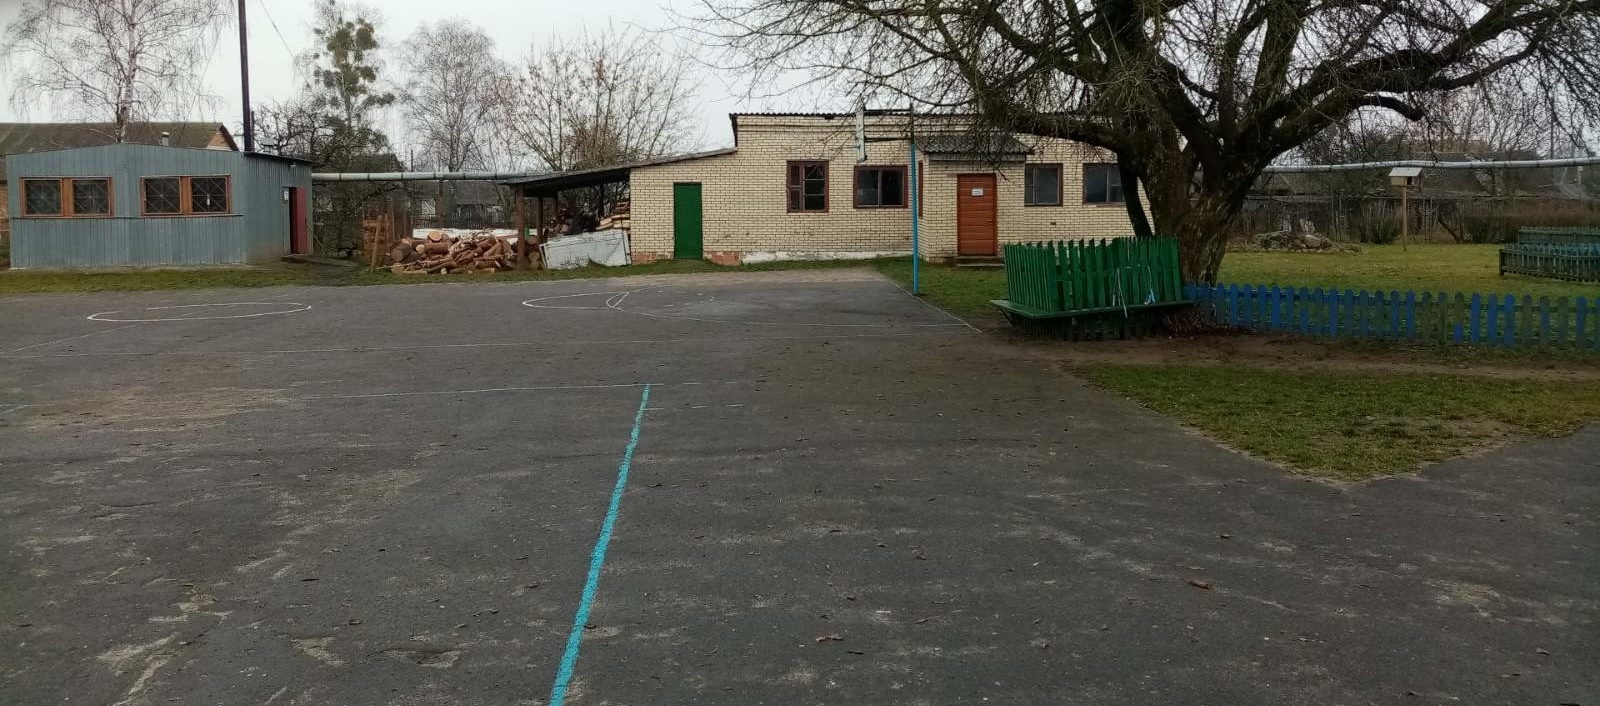 Пад Камянцом хочуць закрыць адзіную беларускамоўную школу ў раёне. Чаму?